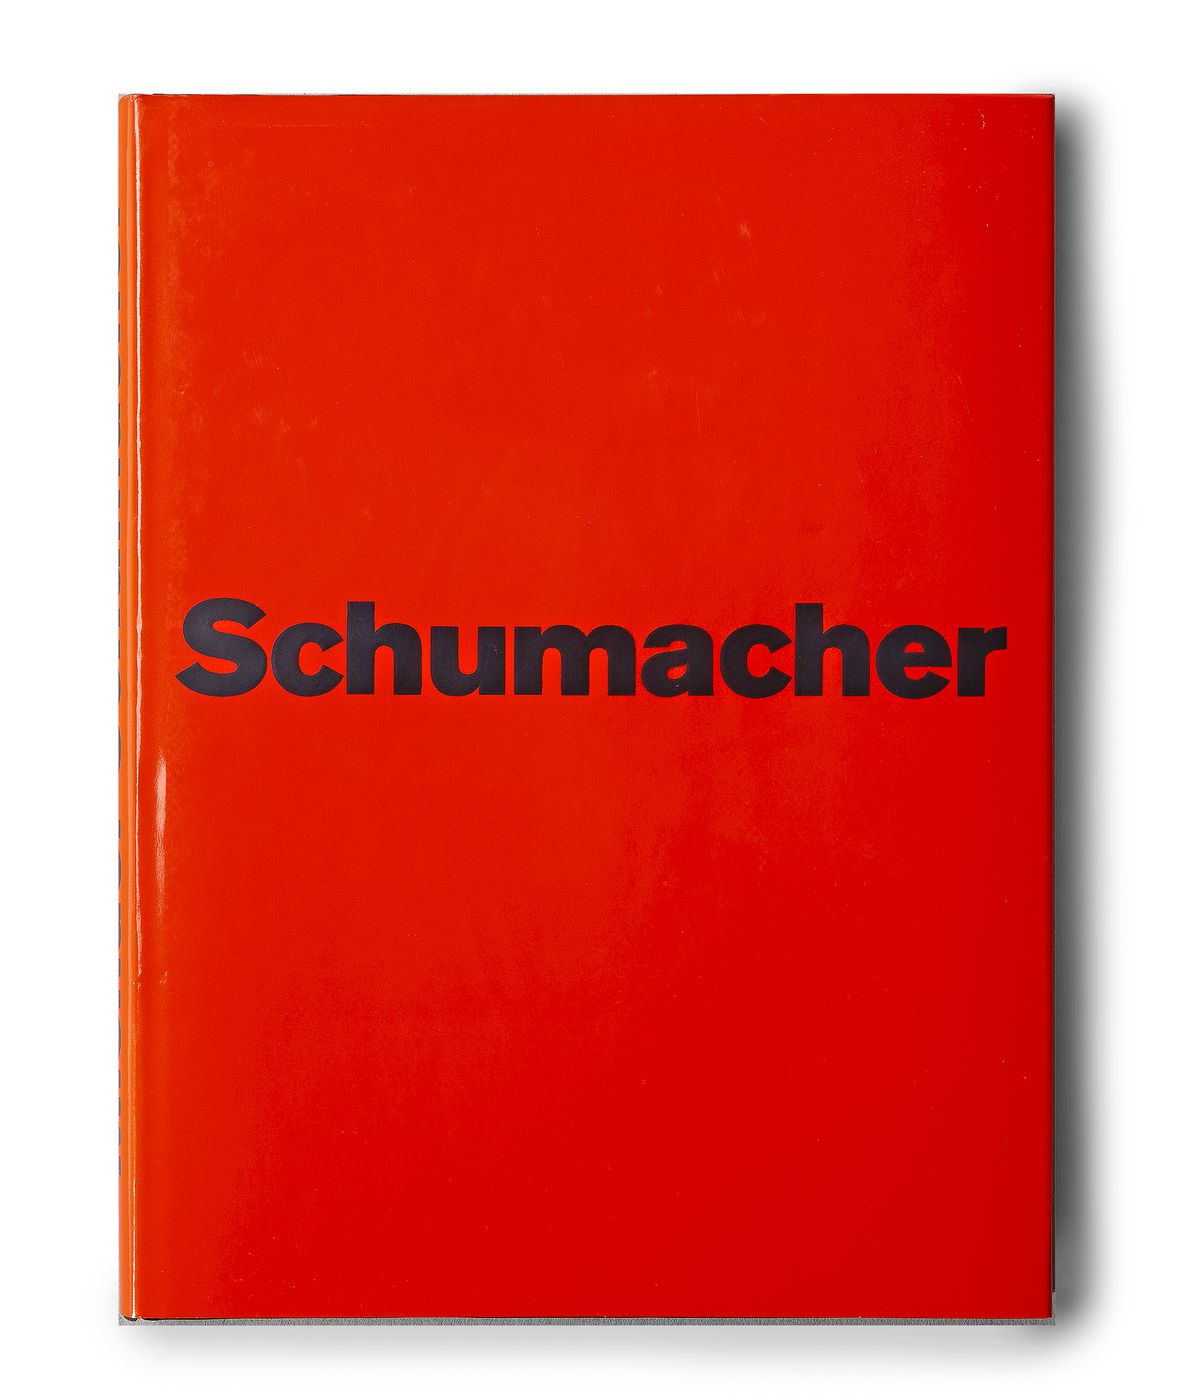 Michael Schumacher
Michael Schumacher
Michael Schumacher